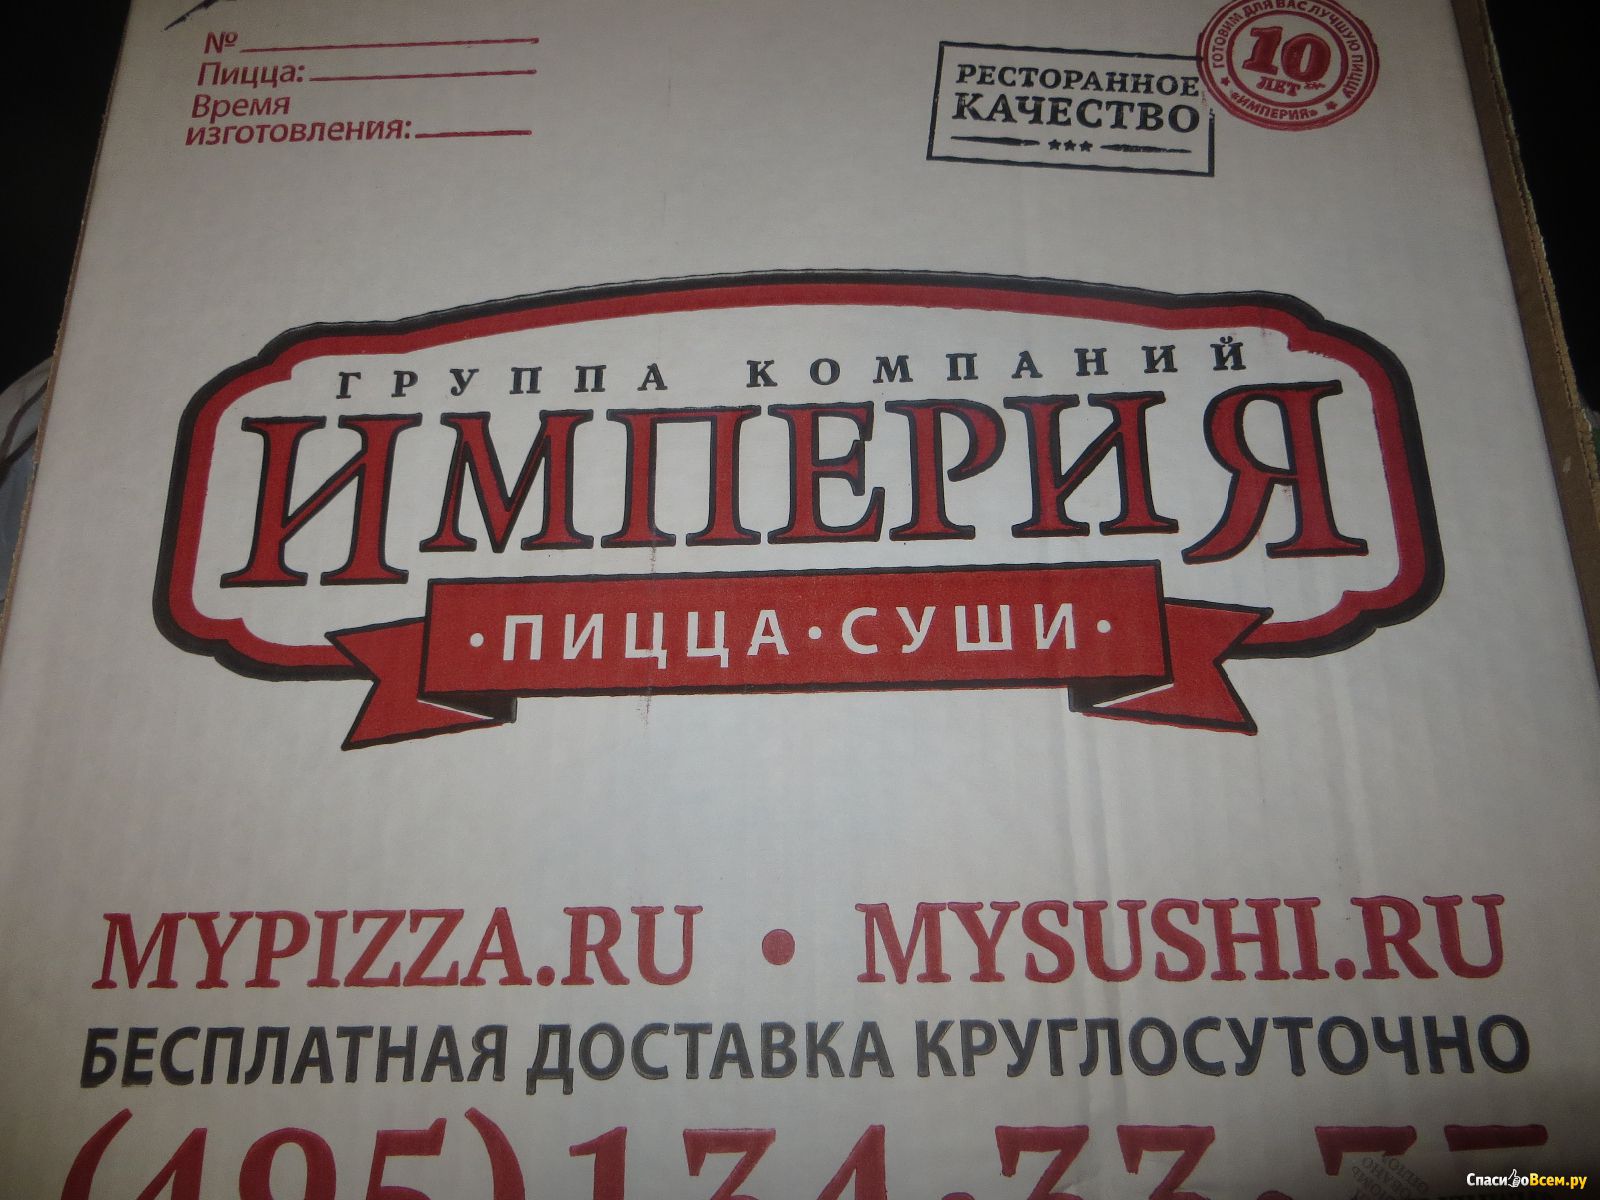 Архангельск пицца империя пиццы